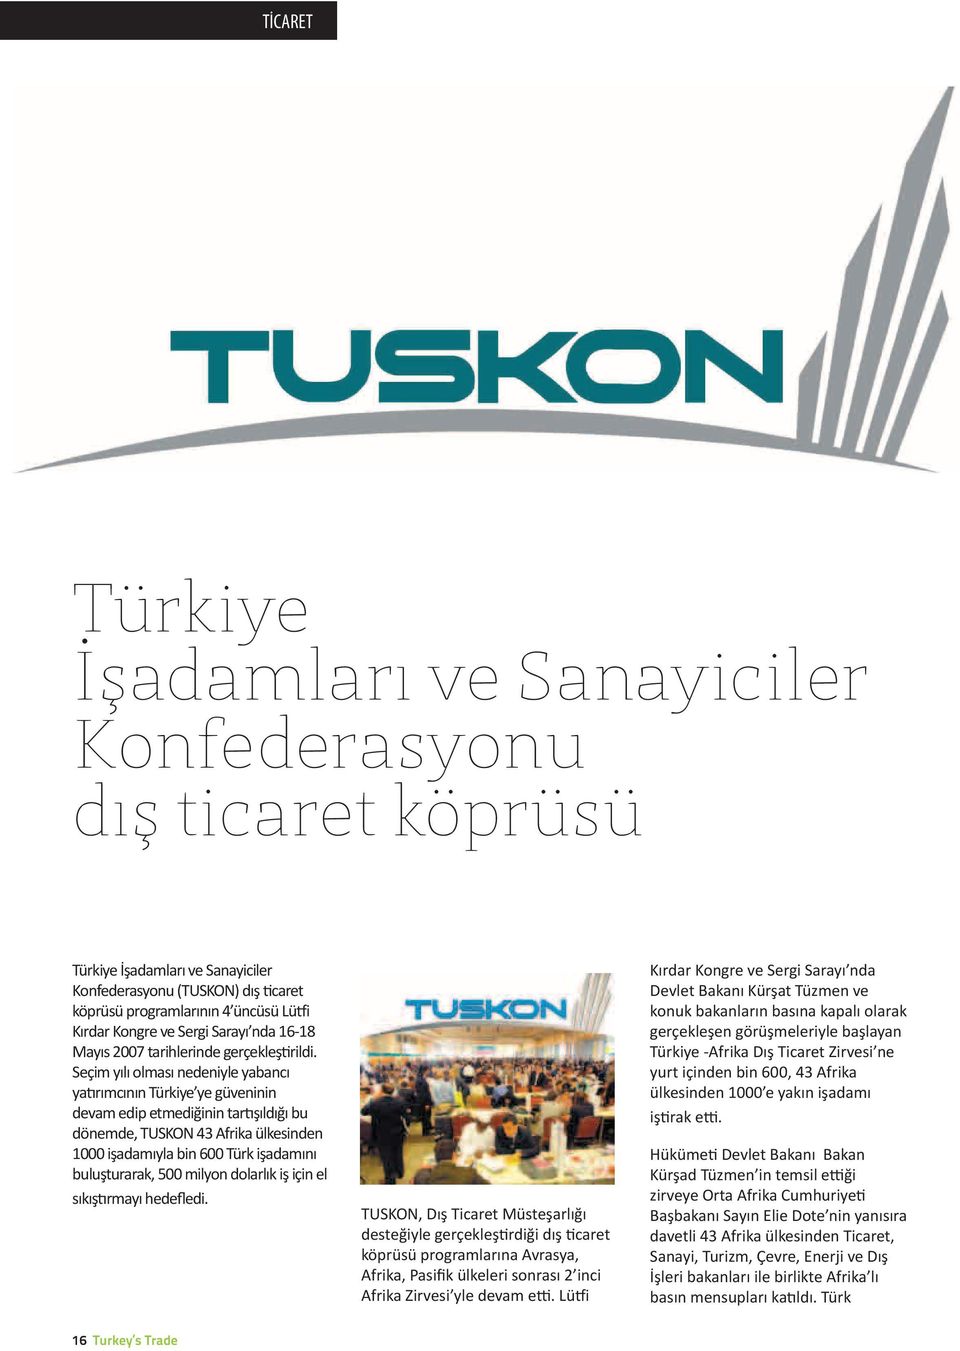 Seçim yılı olması nedeniyle yabancı yatırımcının Türkiye ye güveninin devam edip etmediğinin tartışıldığı bu dönemde, TUSKON 43 Afrika ülkesinden 1000 işadamıyla bin 600 Türk işadamını buluşturarak,